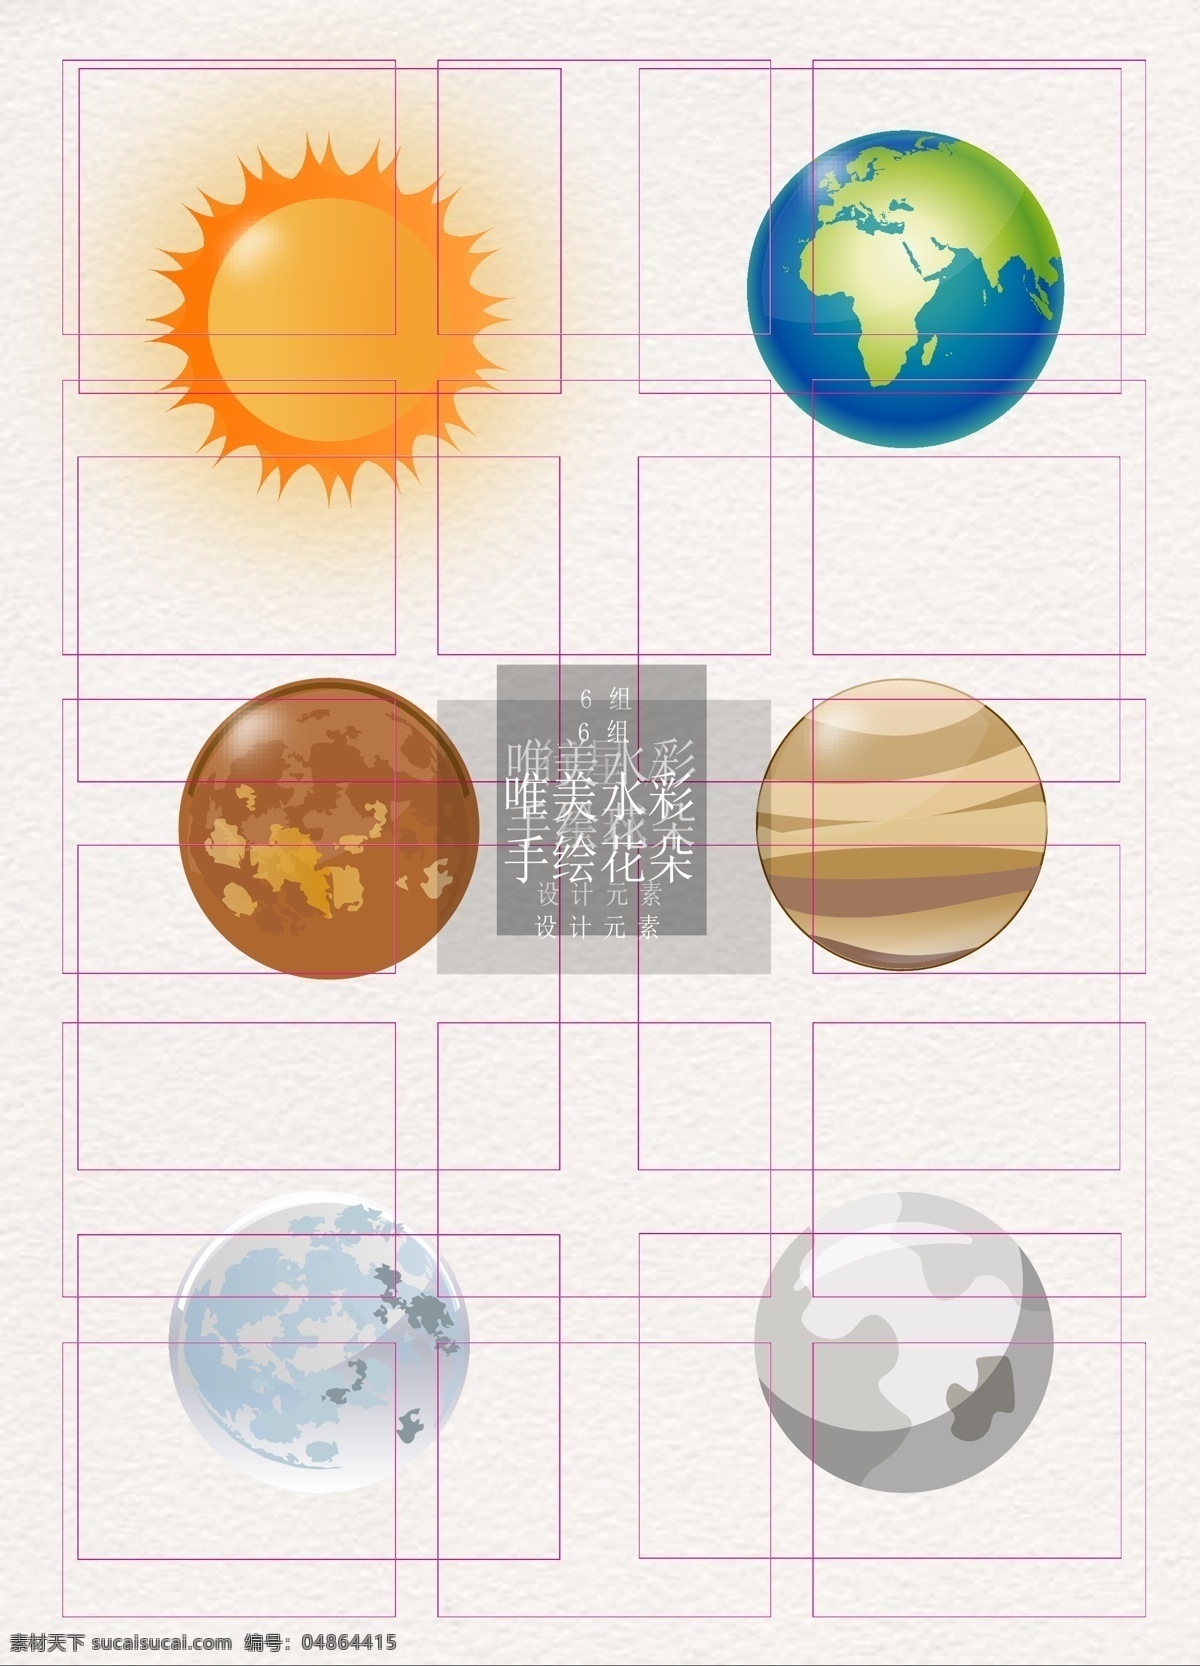 行星 星球 太阳 地球 宇宙 矢量 元素 设计素材 卡通 球体 星系 航天 世界航天日